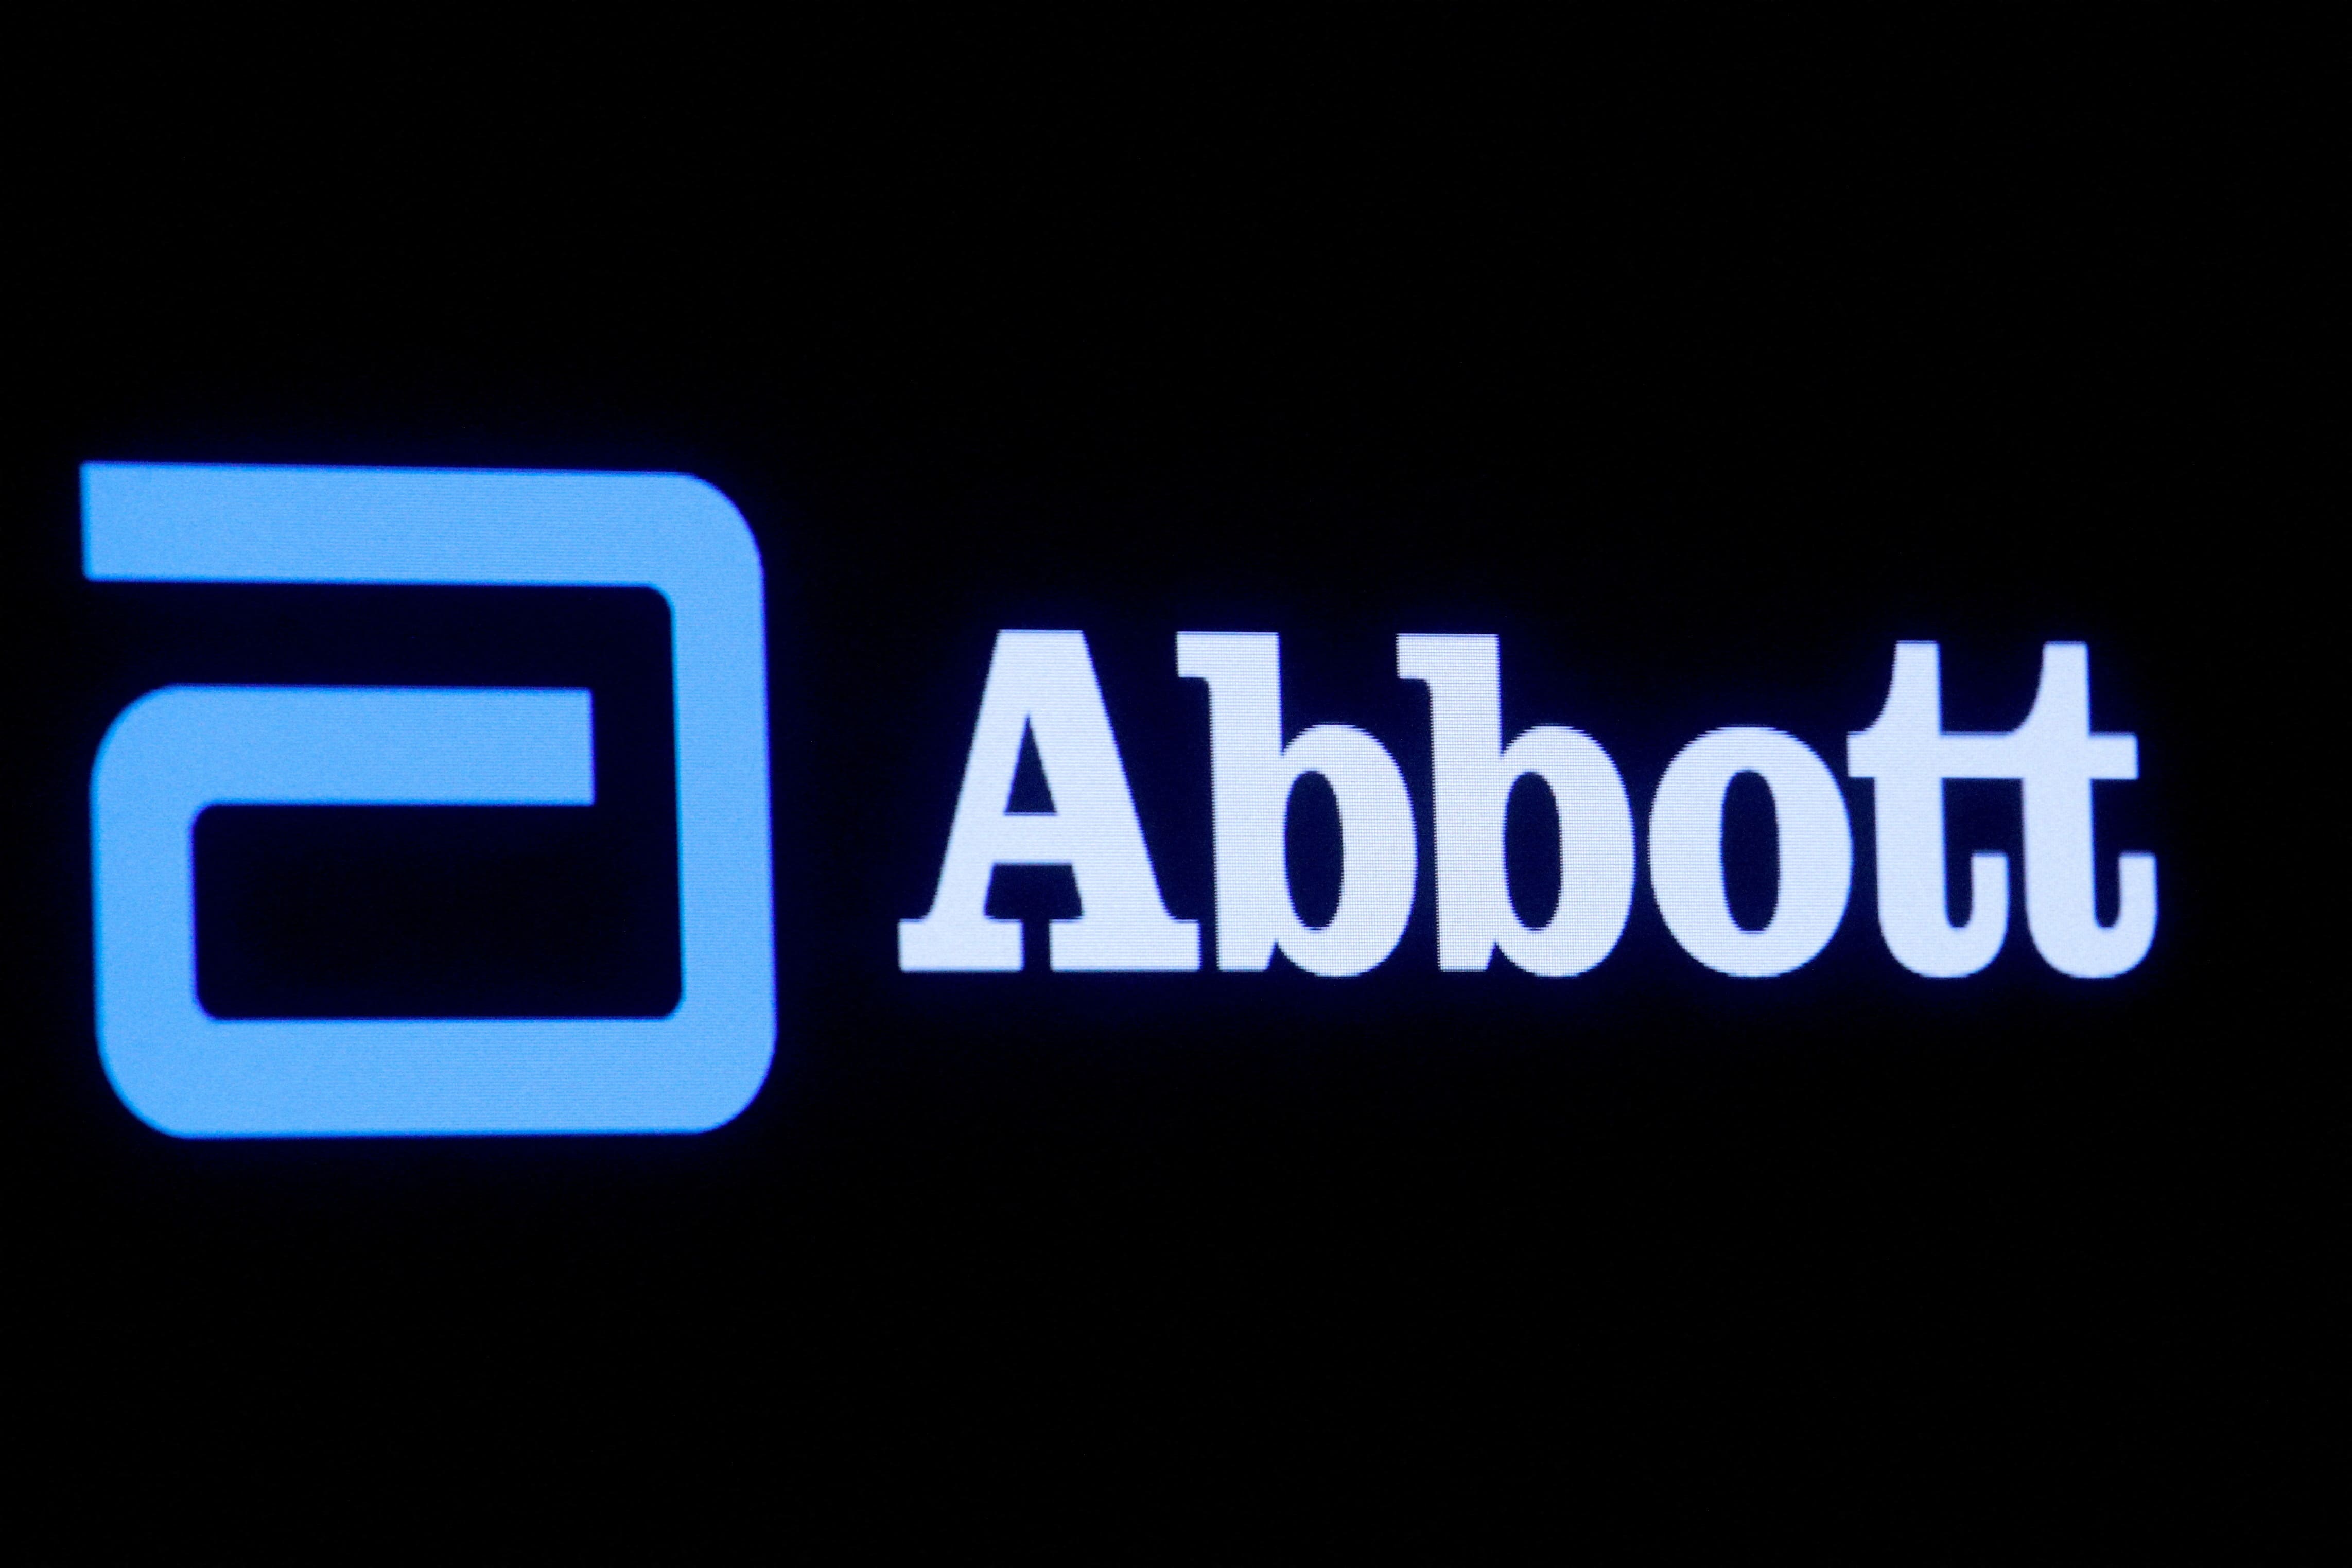 Lait pour bébé : le géant américain de la pharmacie Abbott condamné à une amende colossale